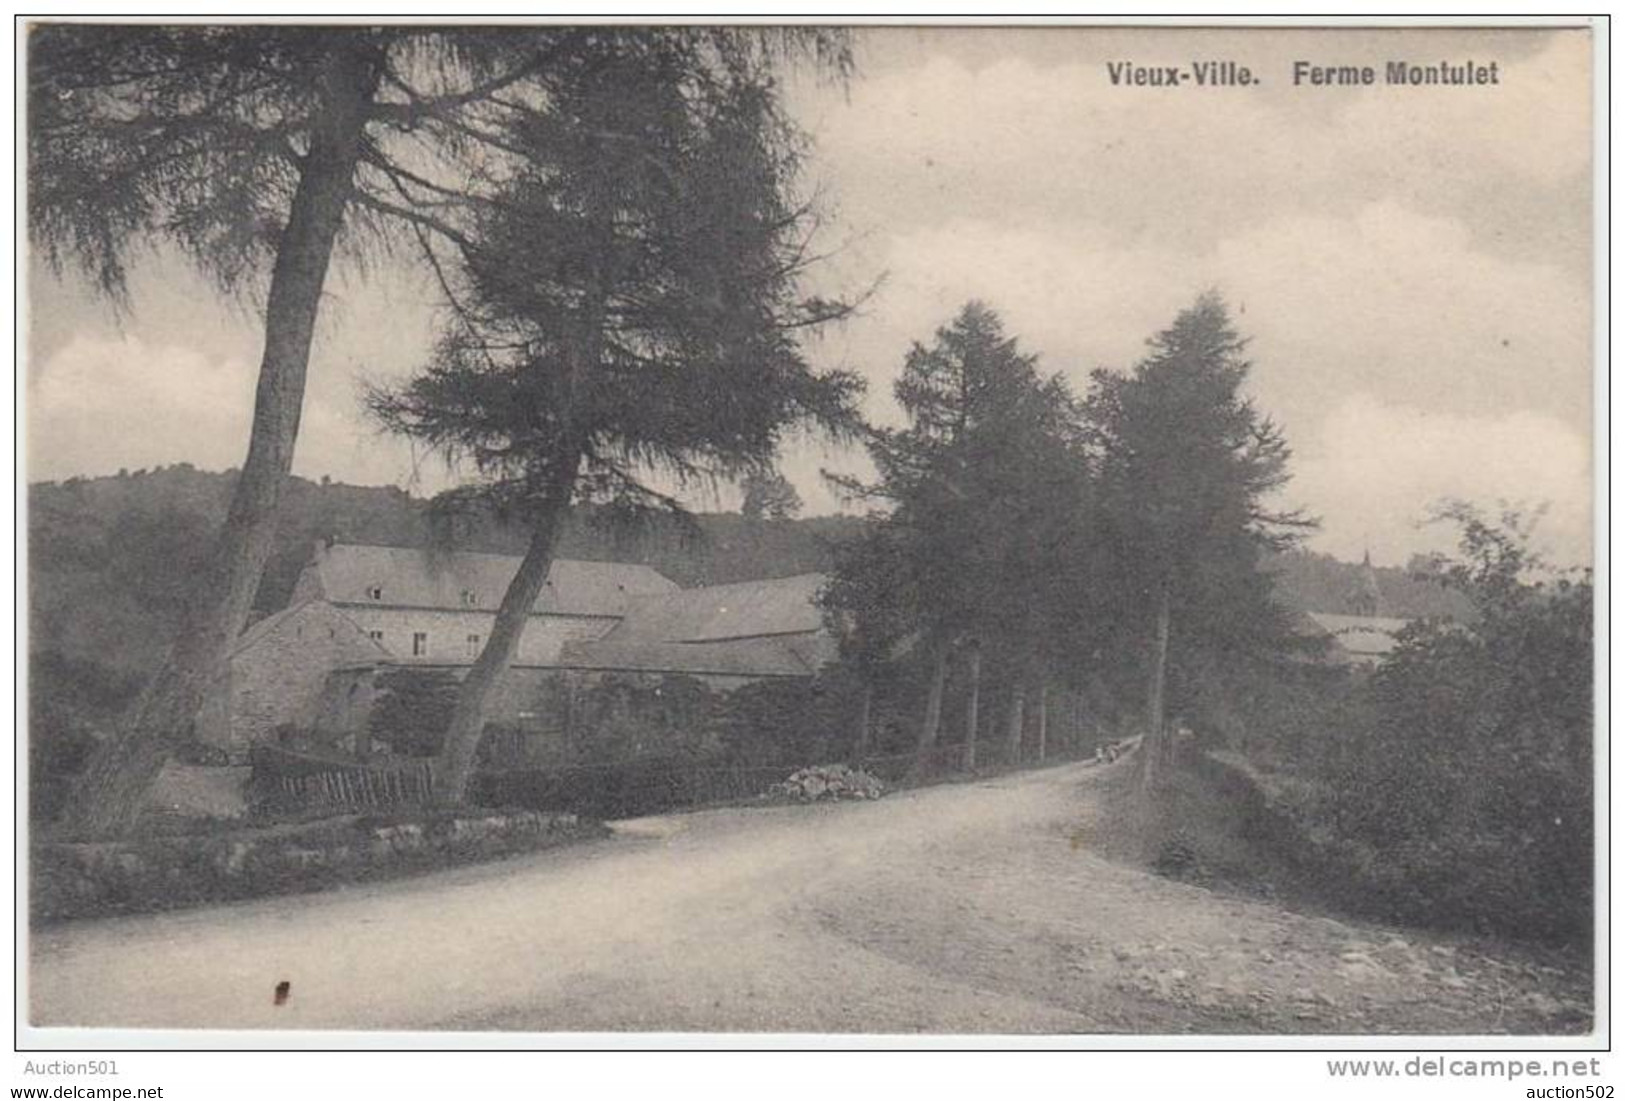 17908g FERME MONTULET - Vieux-Ville - 1911 - Ferrières